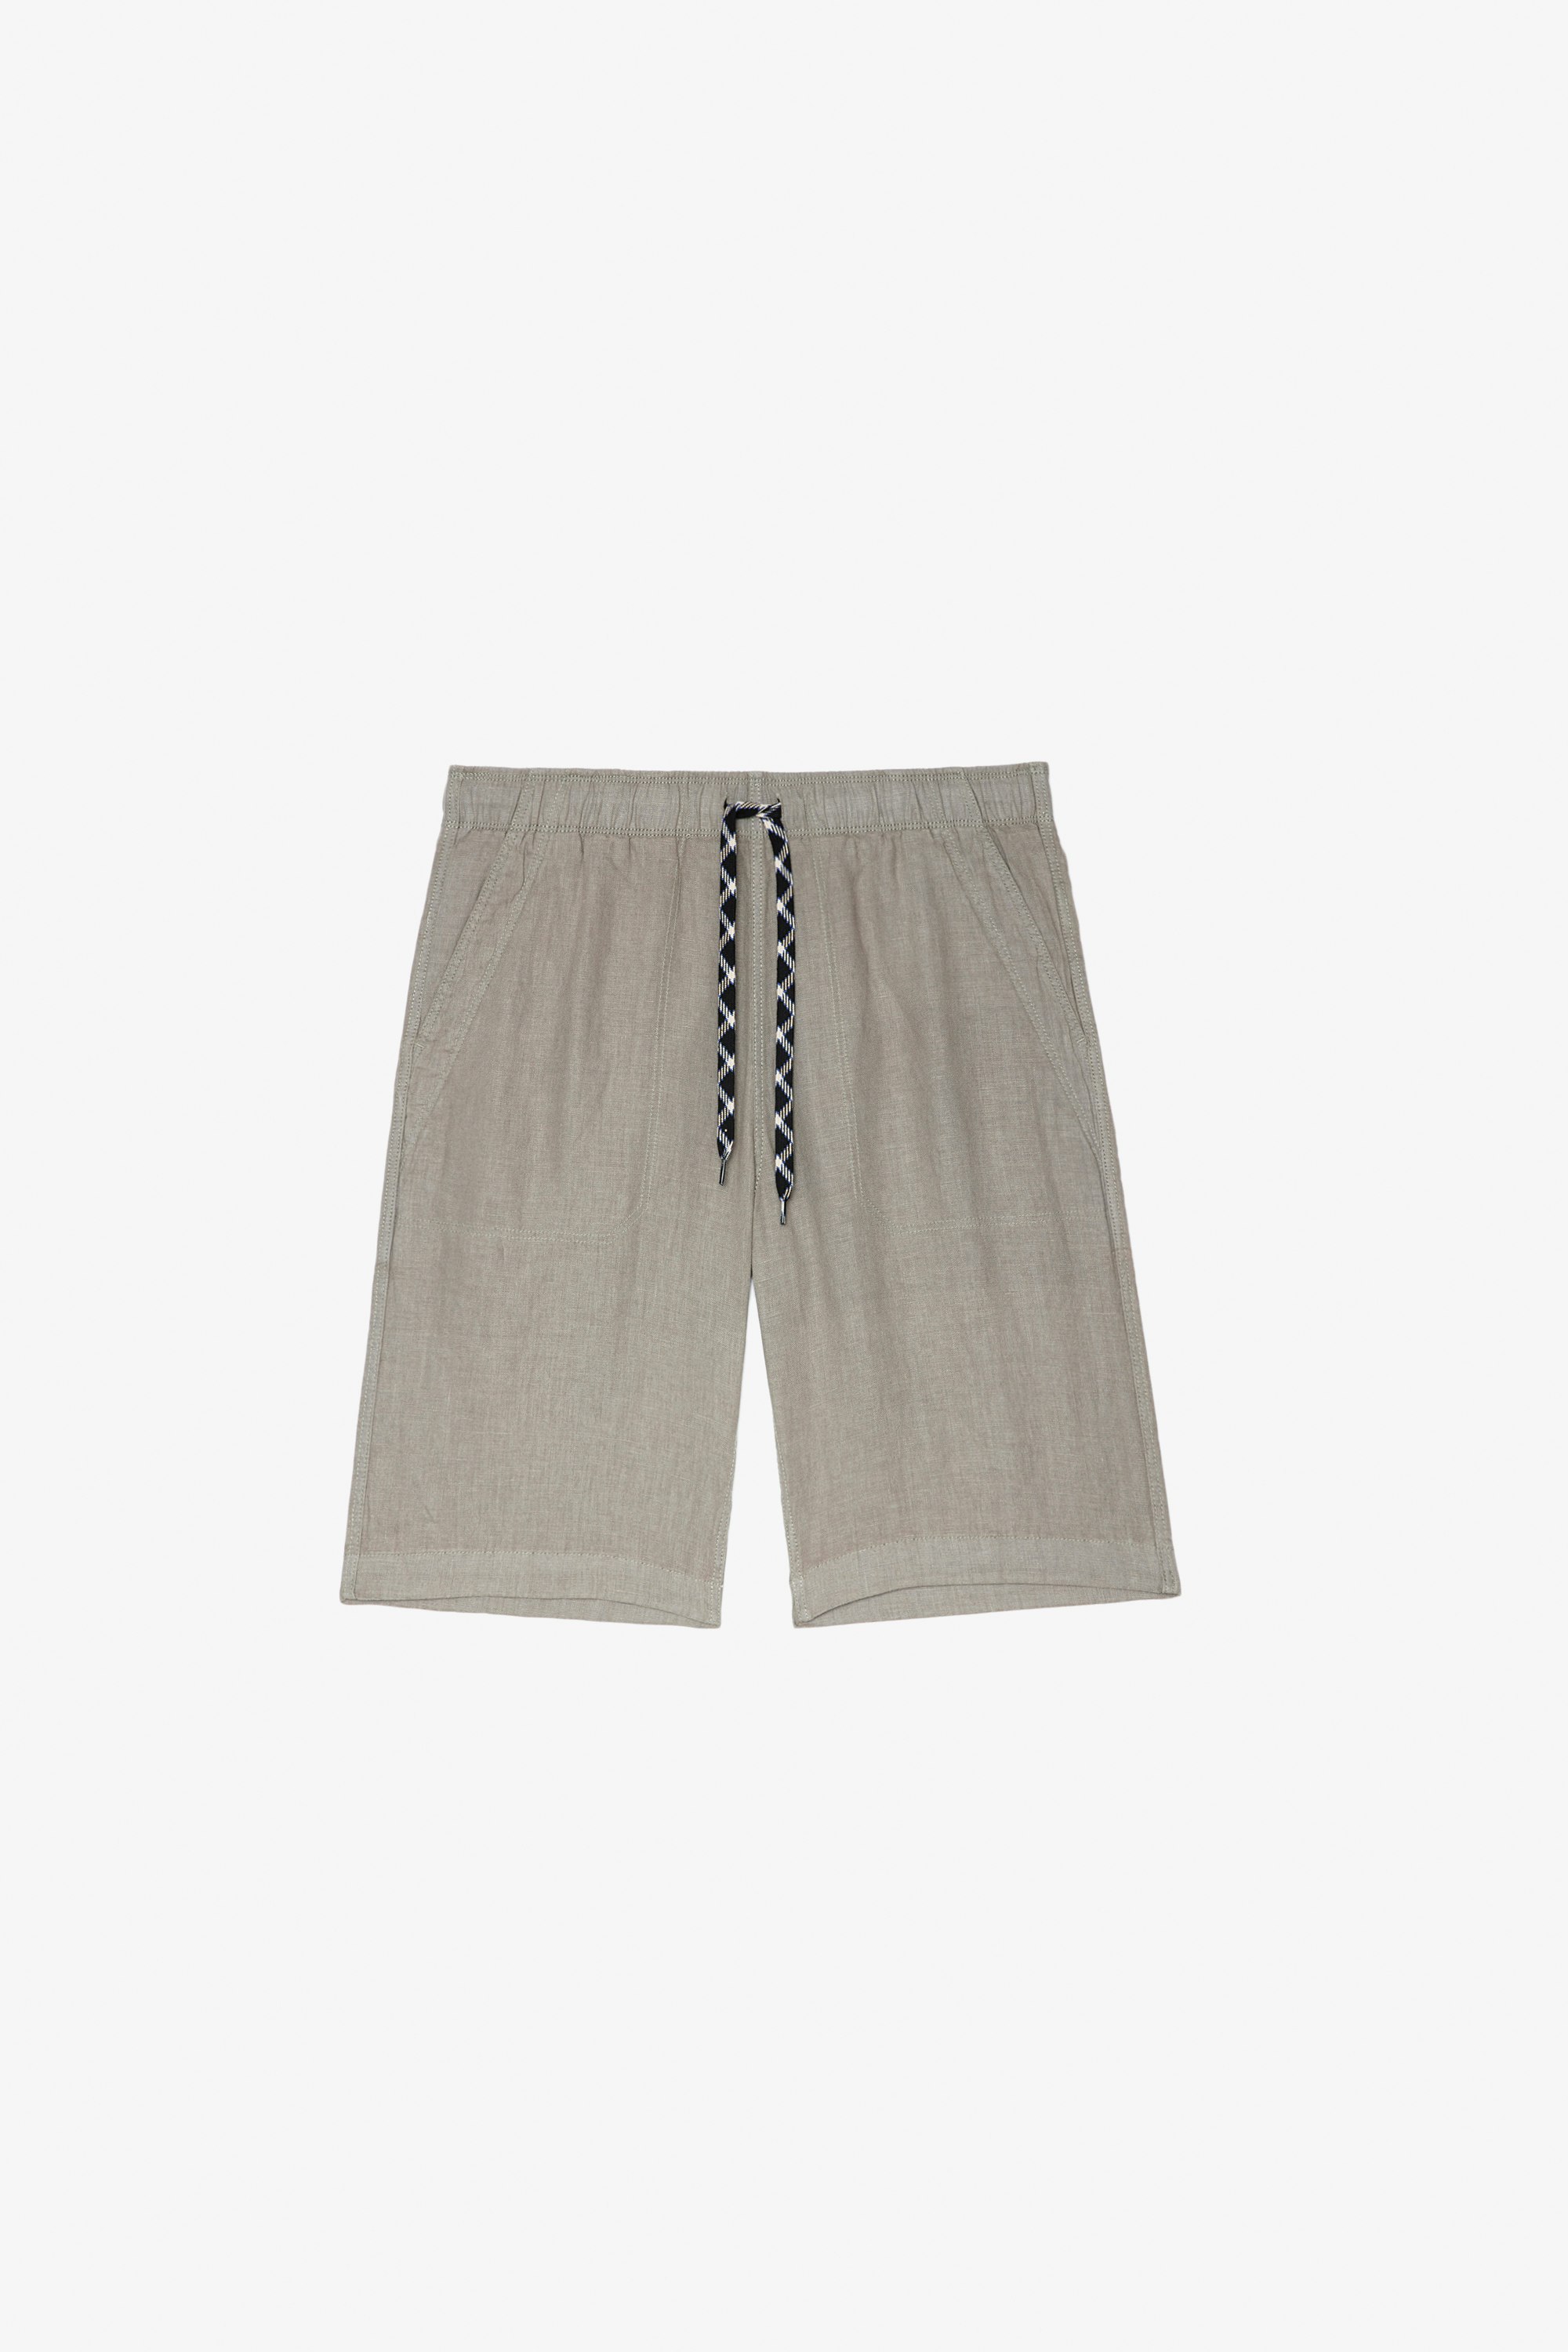 Shorts Pixels Herren-Shorts aus khakifarbenem Leinen mit mehreren Taschen